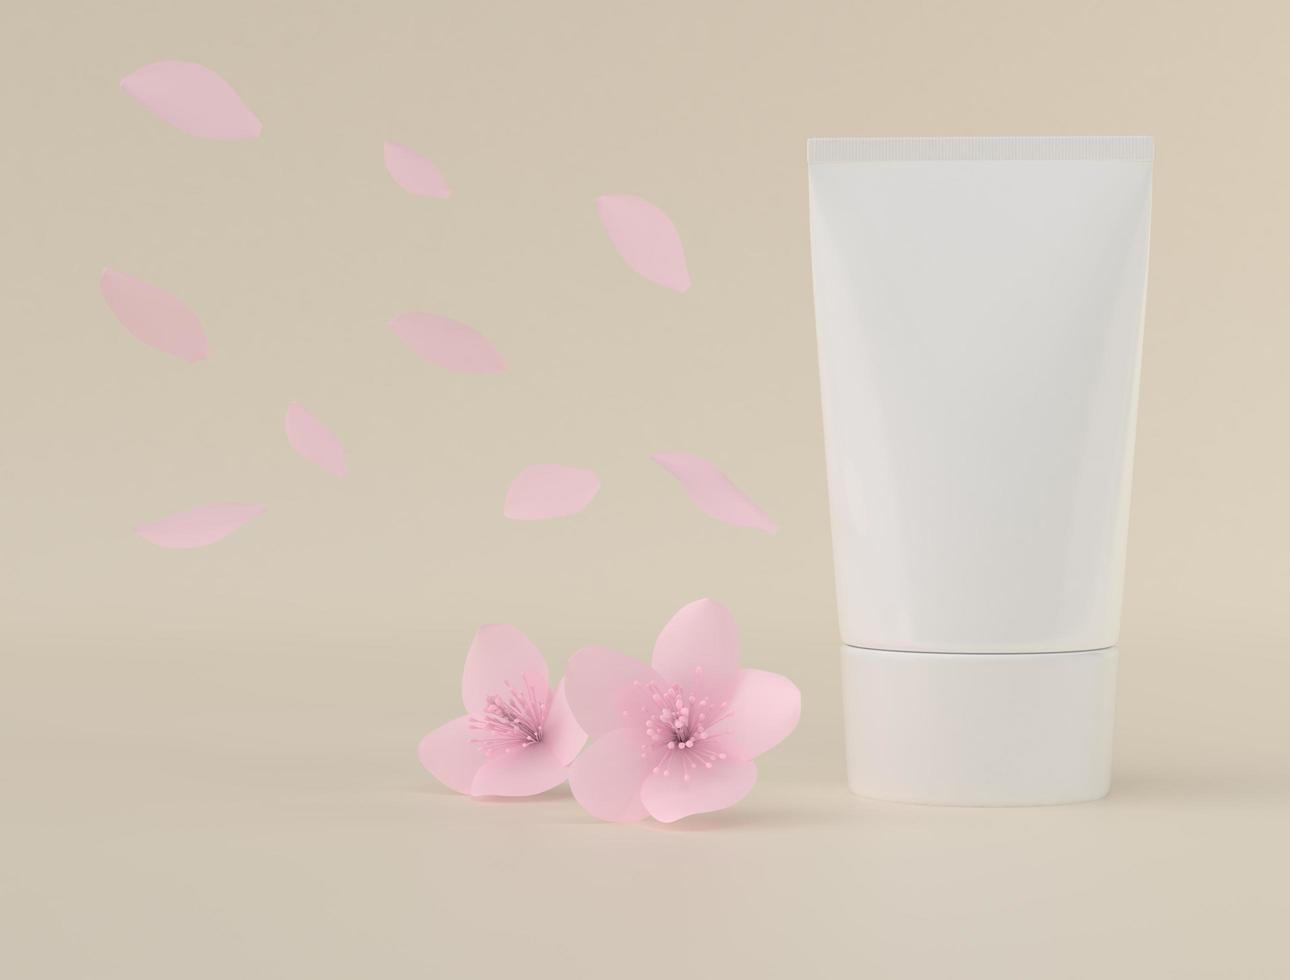 tubo exprimidor para aplicar crema o maquillaje sobre fondo rosa pastel y floral. foto